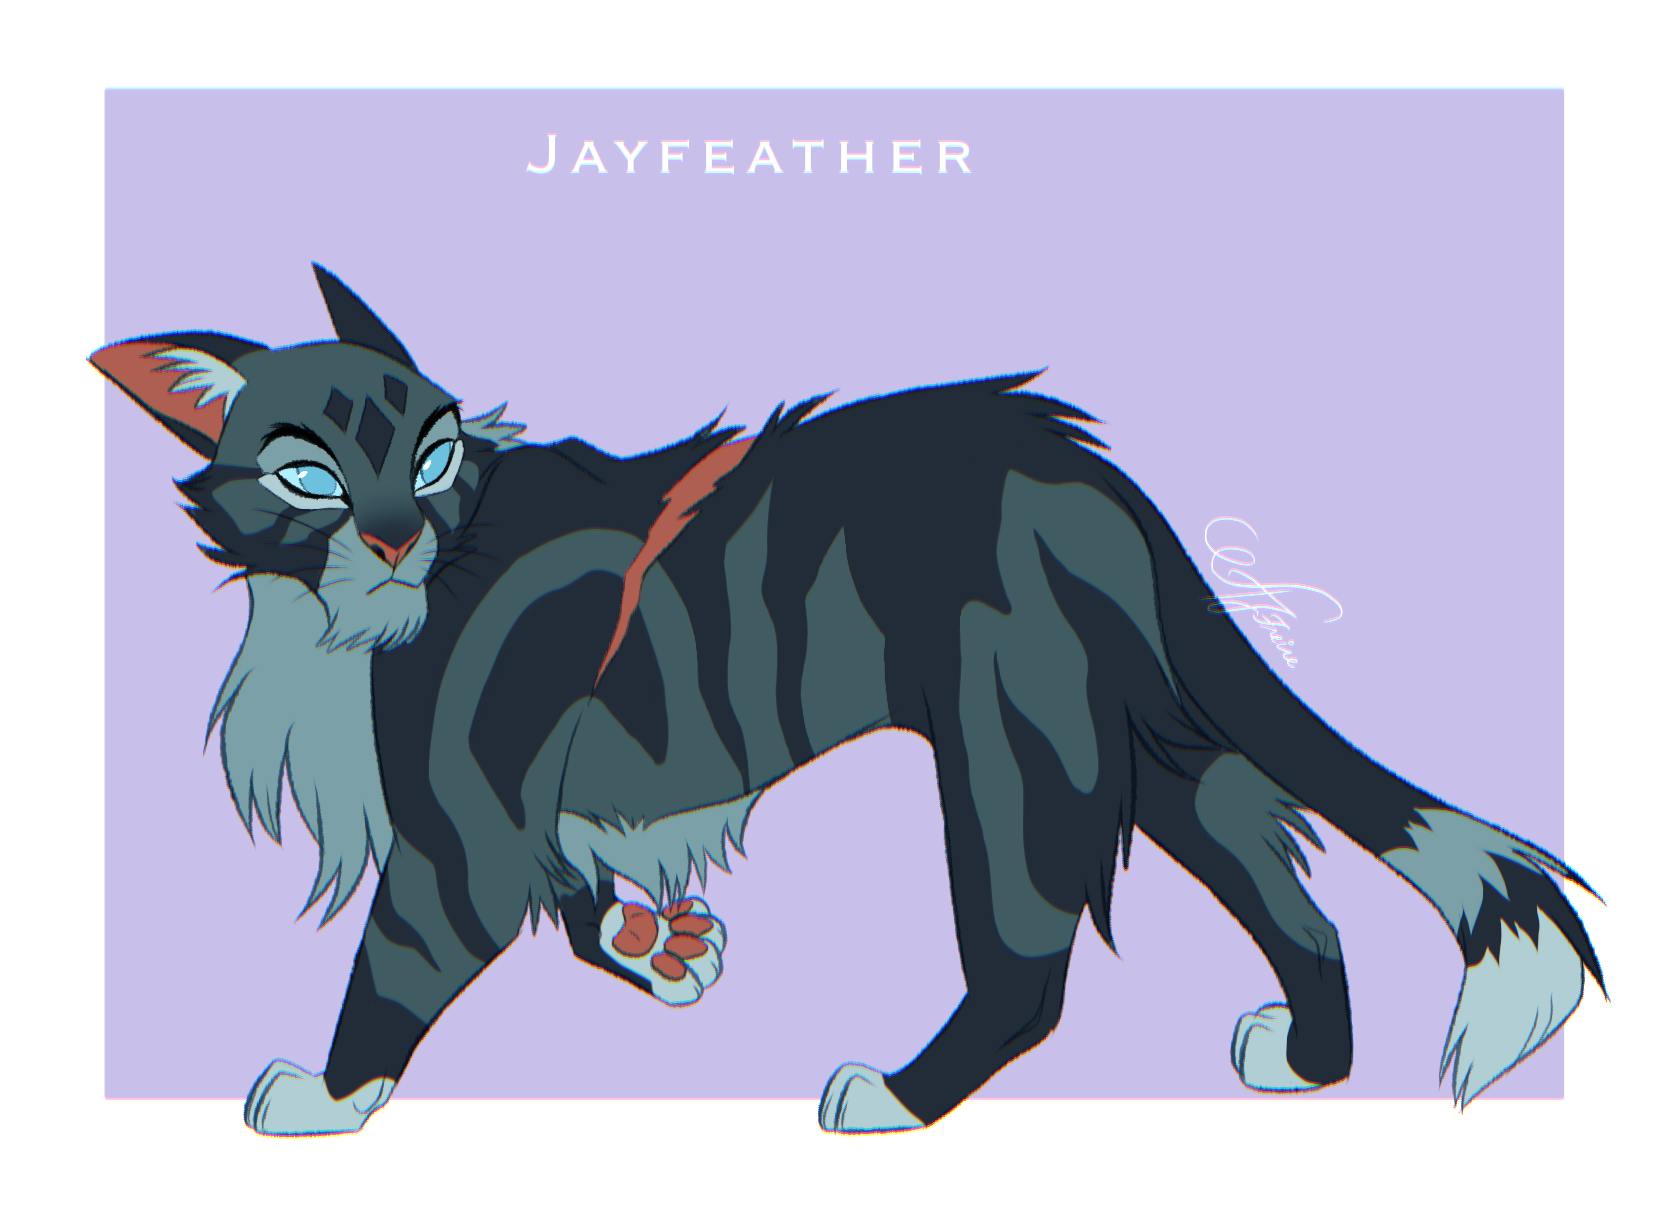 Jayfeather design - Warriors Cats by AngelDalet on DeviantArt